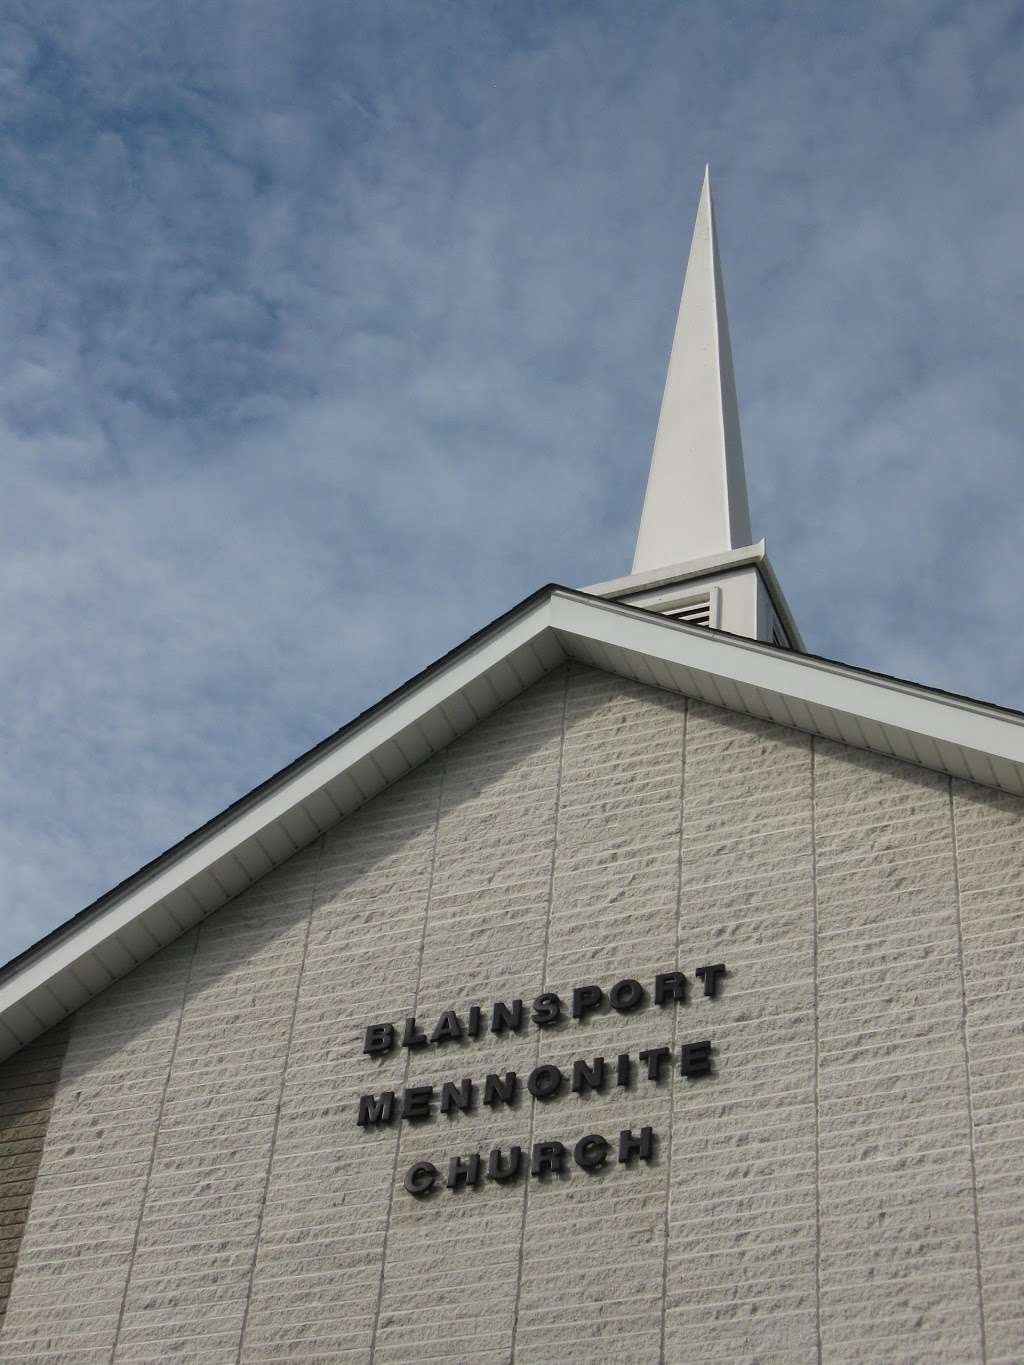 Blainsport Mennonite Church | 85 S Blainsport Rd, Reinholds, PA 17569, USA | Phone: (717) 336-3424